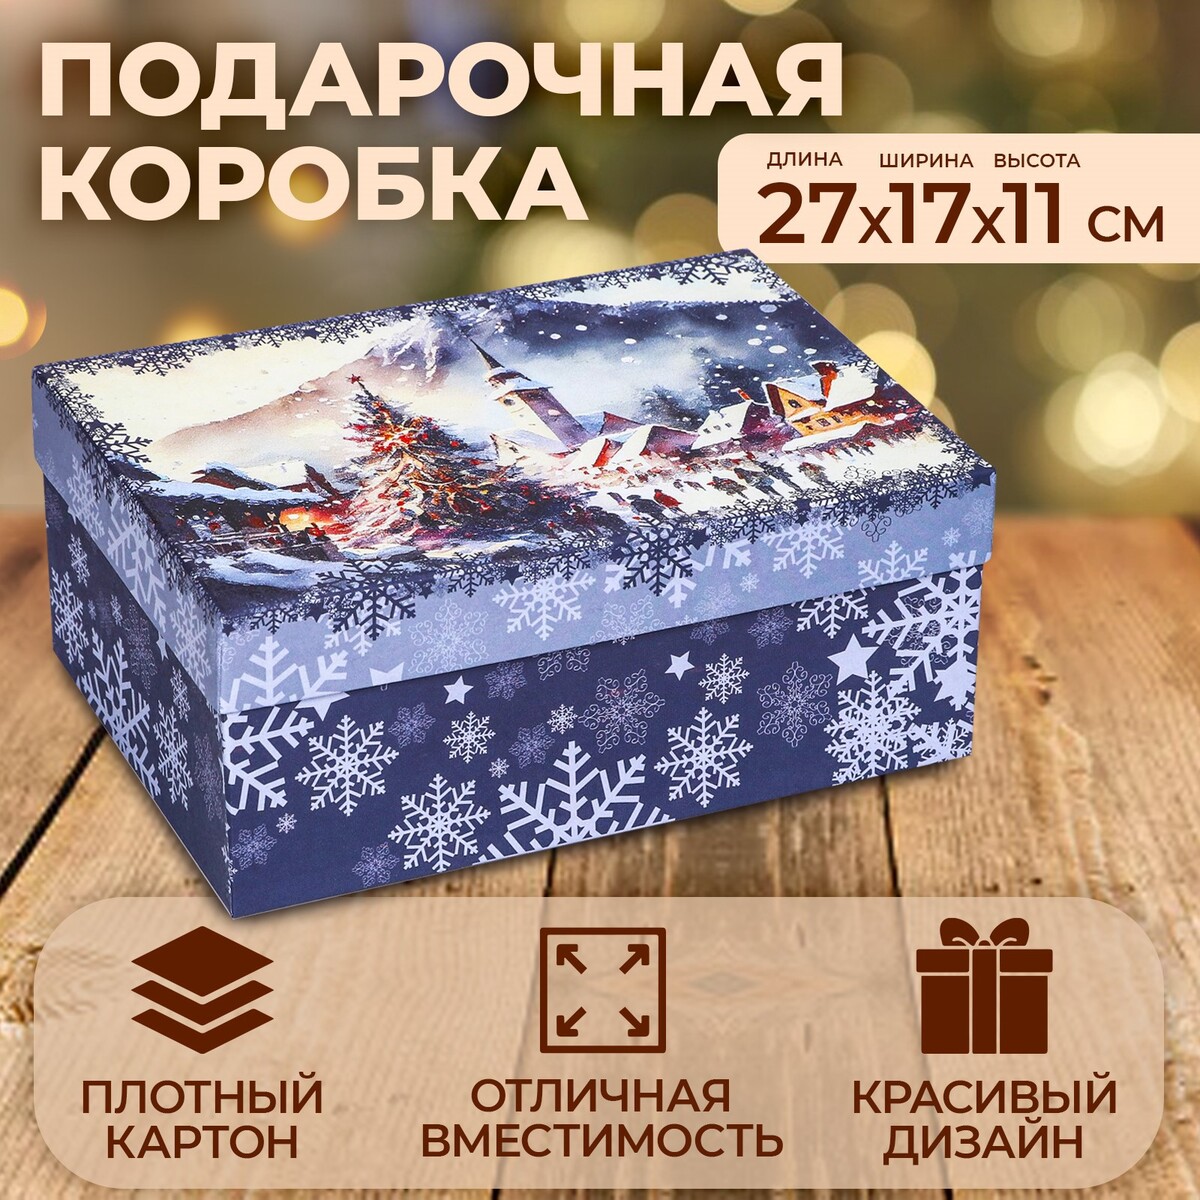 Купить подарочную коробку прямоугольную на магните 23см в интернет-магазине в Москве